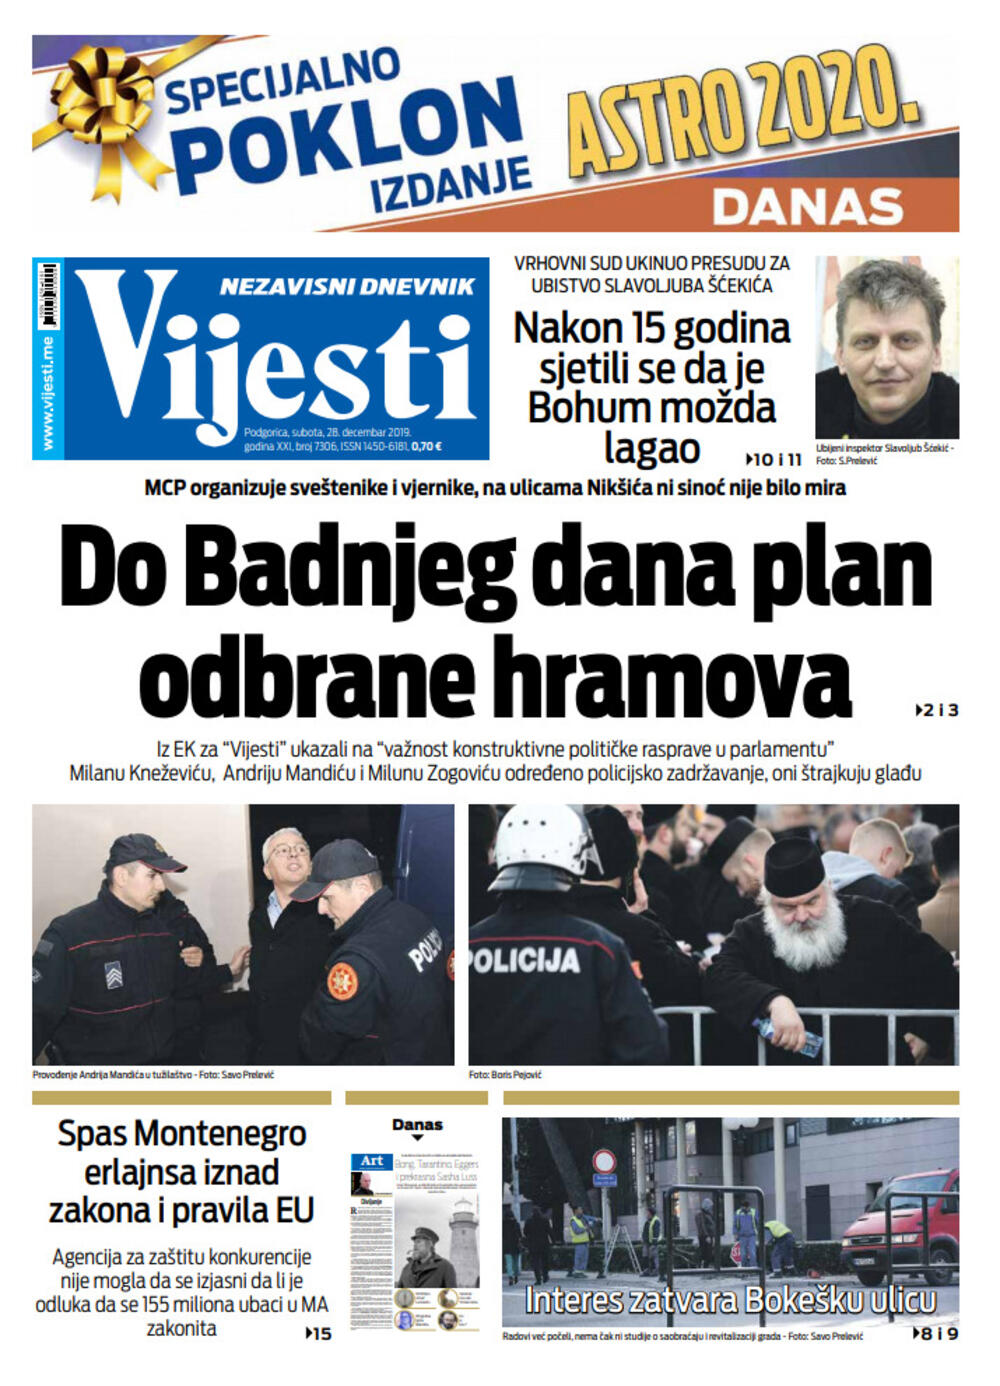 Naslovna strana "Vijesti" za. 28. decembar 2019., Foto: Vijesti